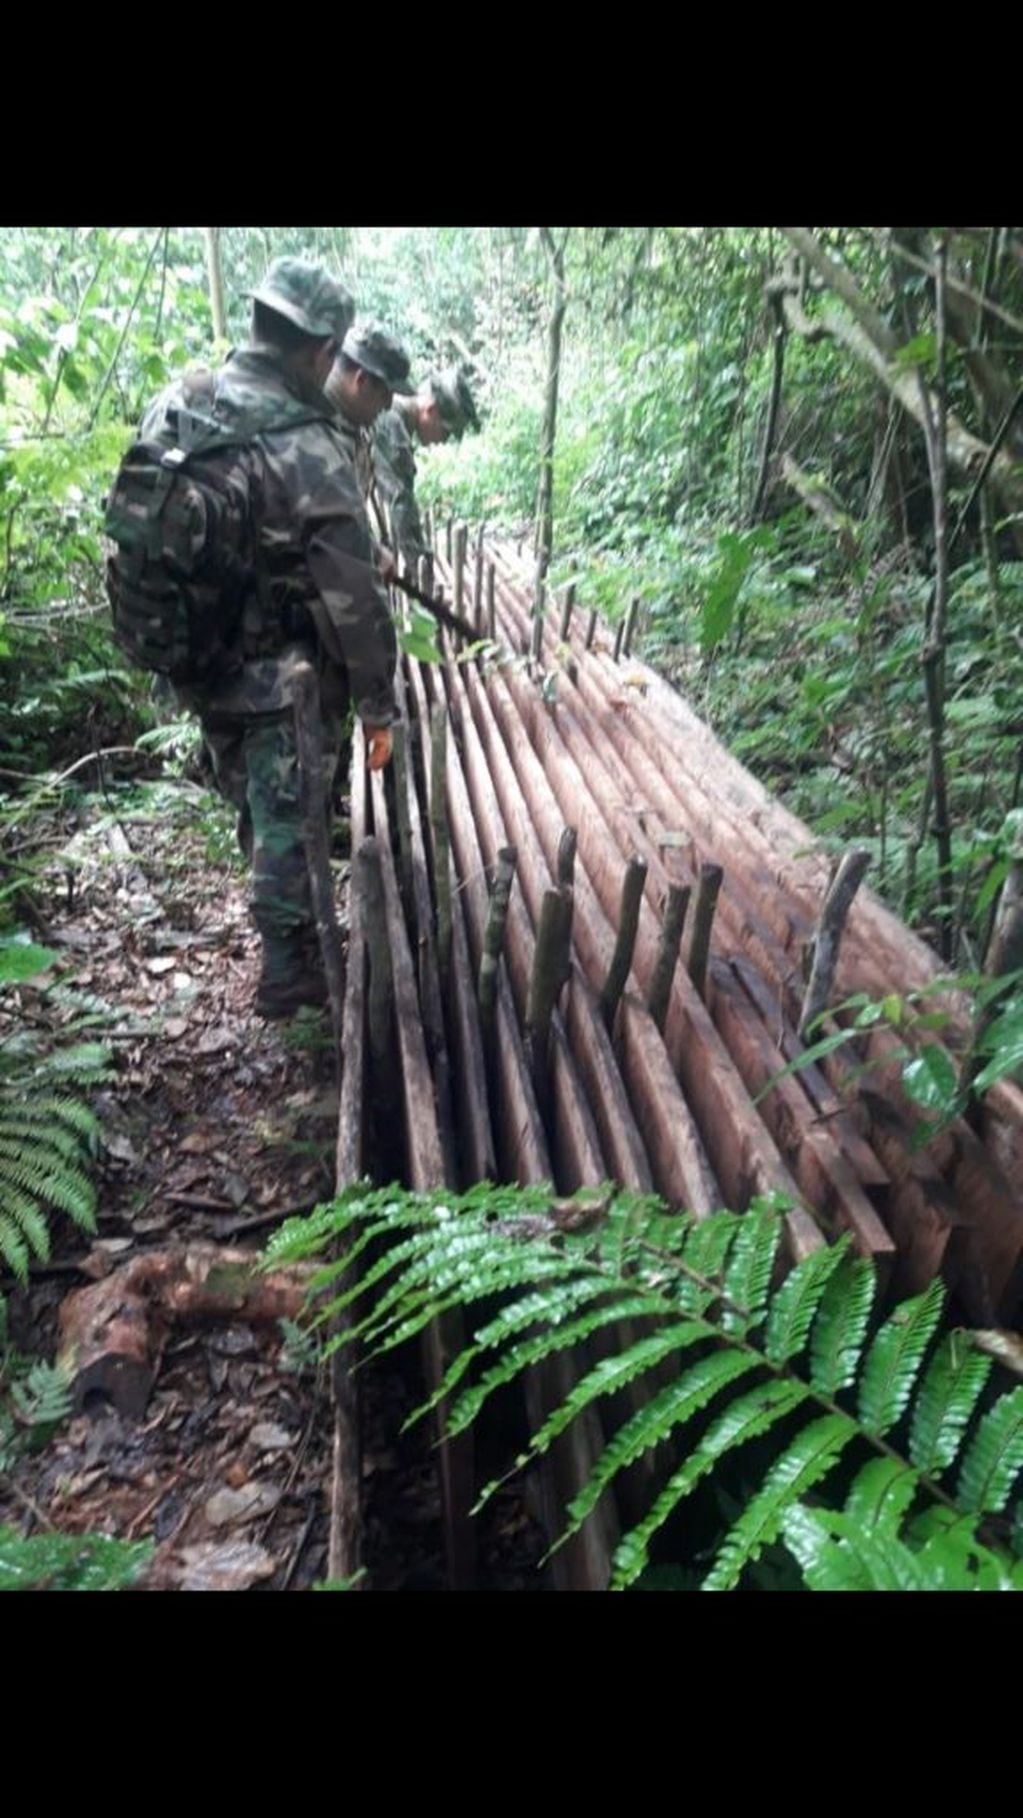 Tablones de madera ya aserrados y cepillados, listos para ingresar al mercado ilegal. Estaban en un sector de selva del Ejército. (Parques)